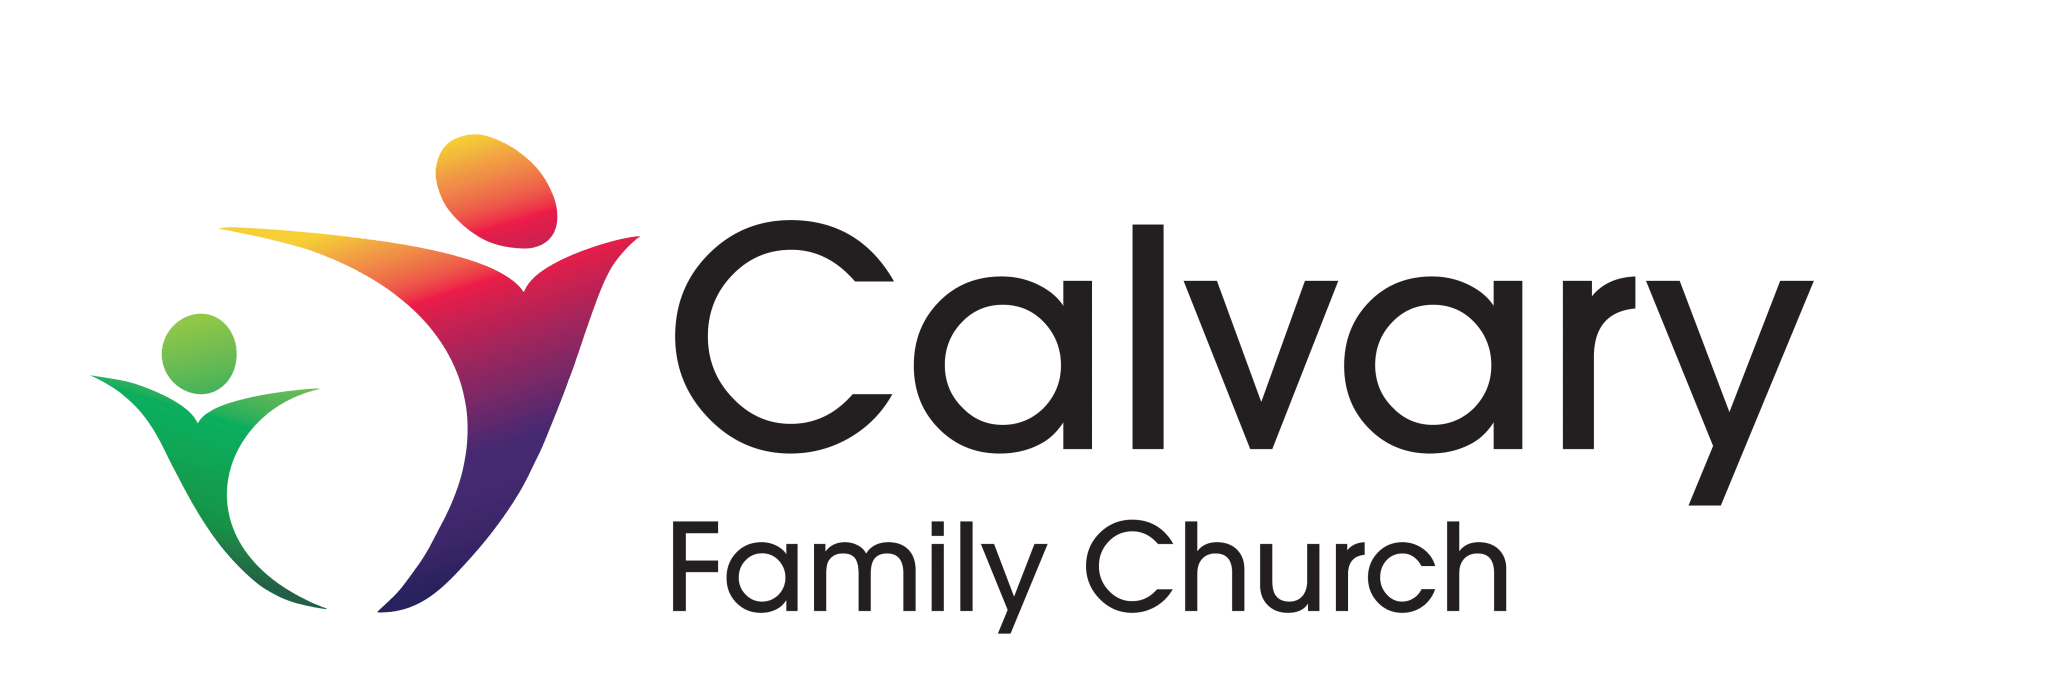 Calvary Family Church